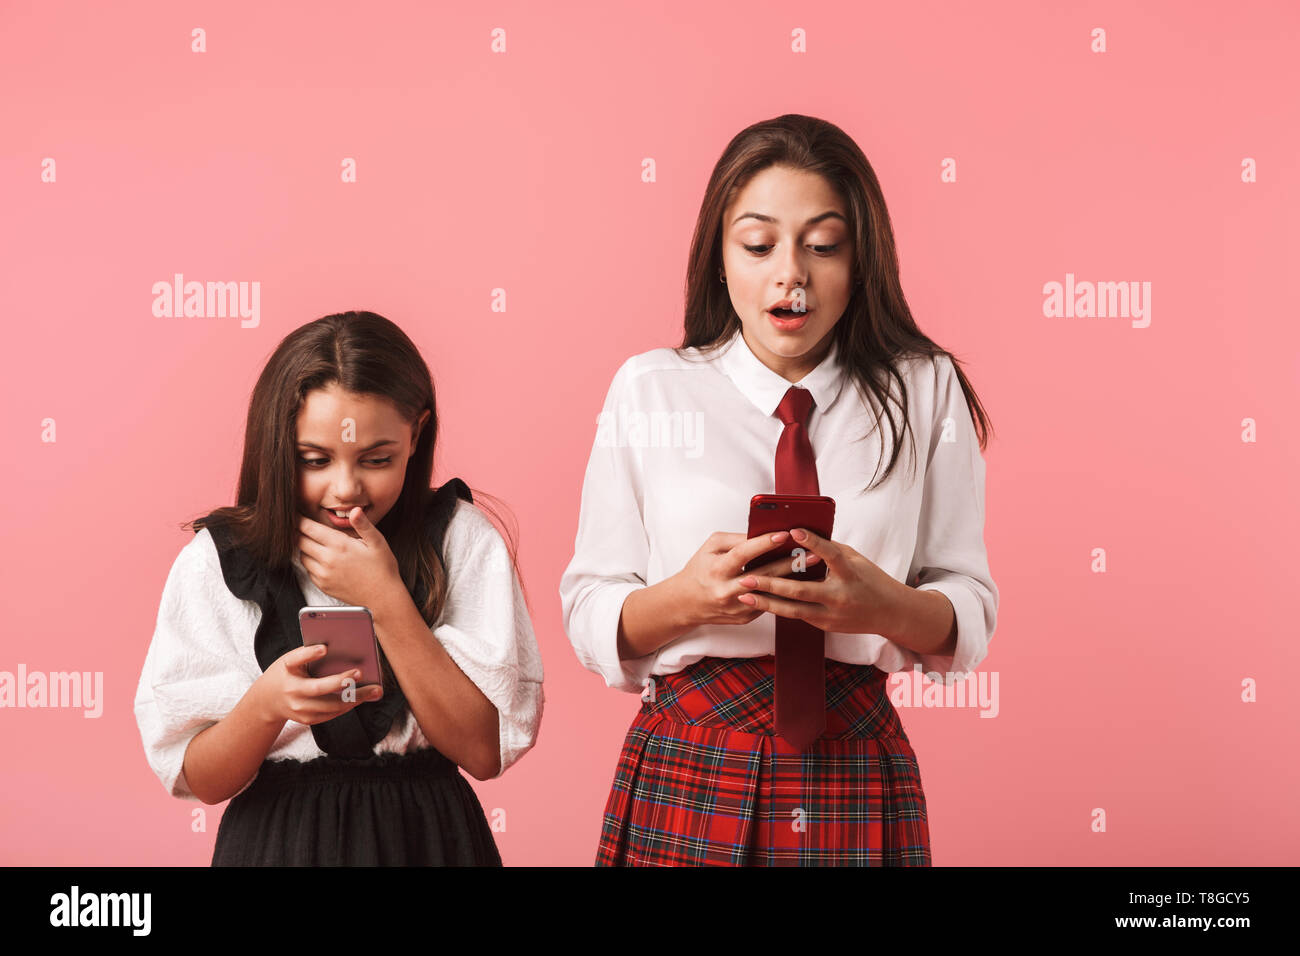 Ritratto di ottimista ragazze in uniforme scolastica utilizzando i telefoni cellulari mentre in piedi isolato su sfondo rosso Foto Stock